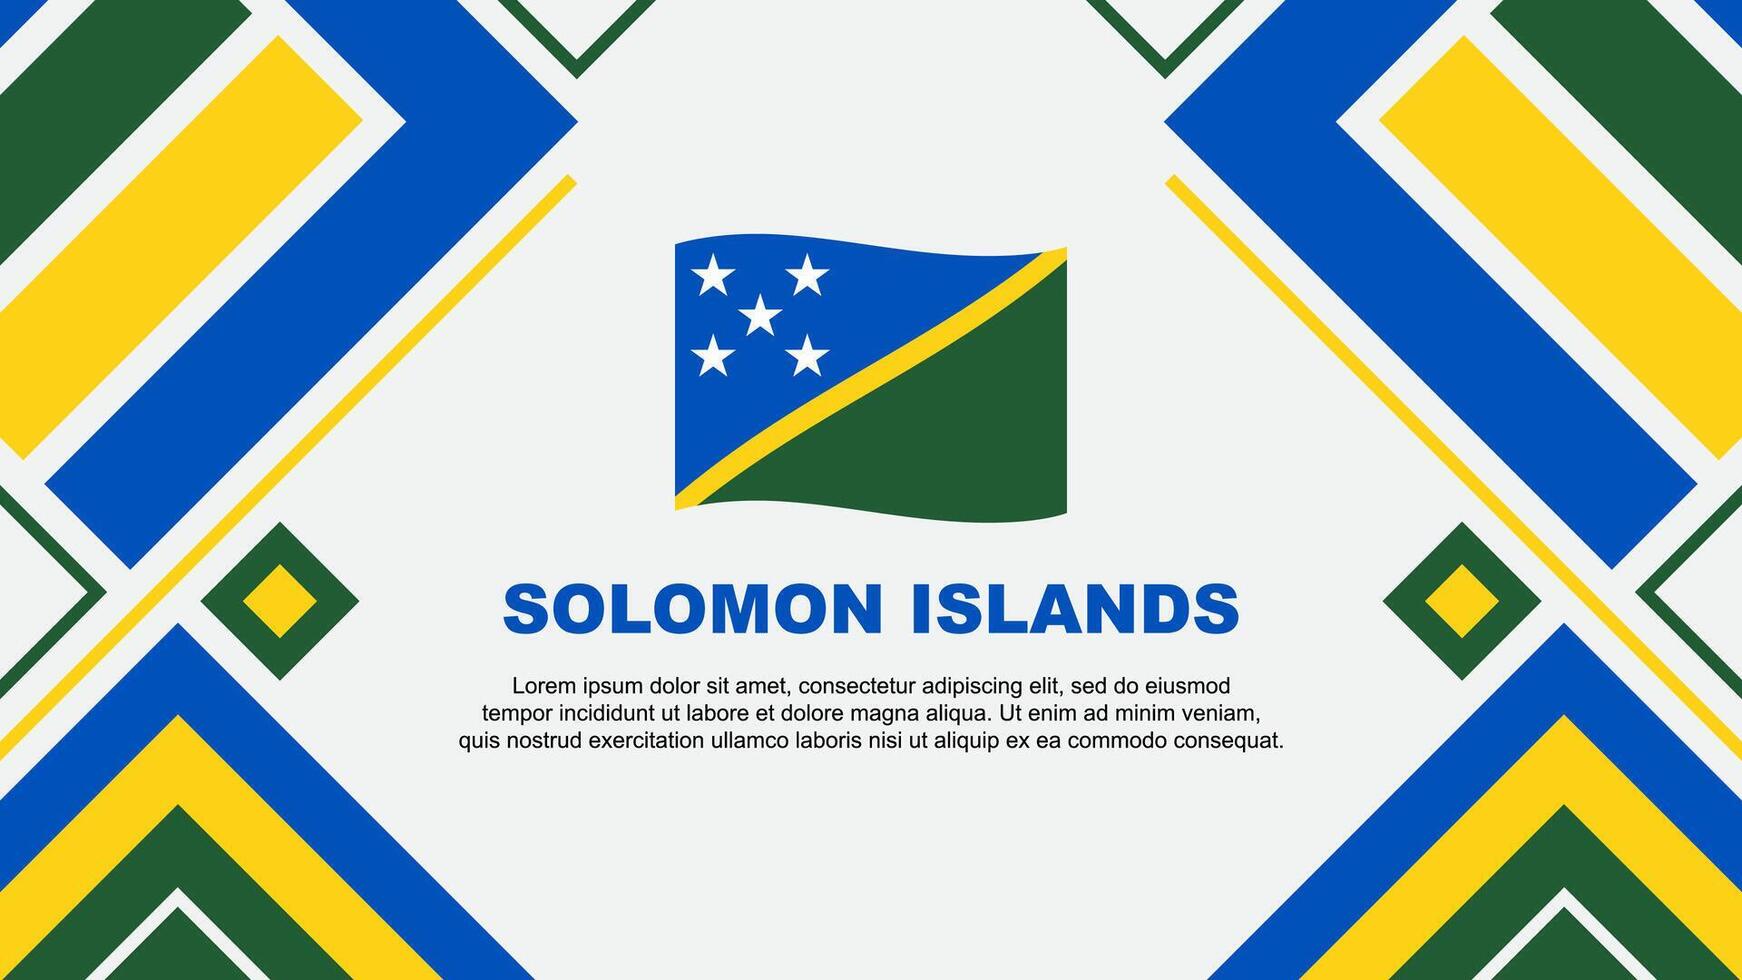 Salomón islas bandera resumen antecedentes diseño modelo. Salomón islas independencia día bandera fondo de pantalla vector ilustración. Salomón islas bandera